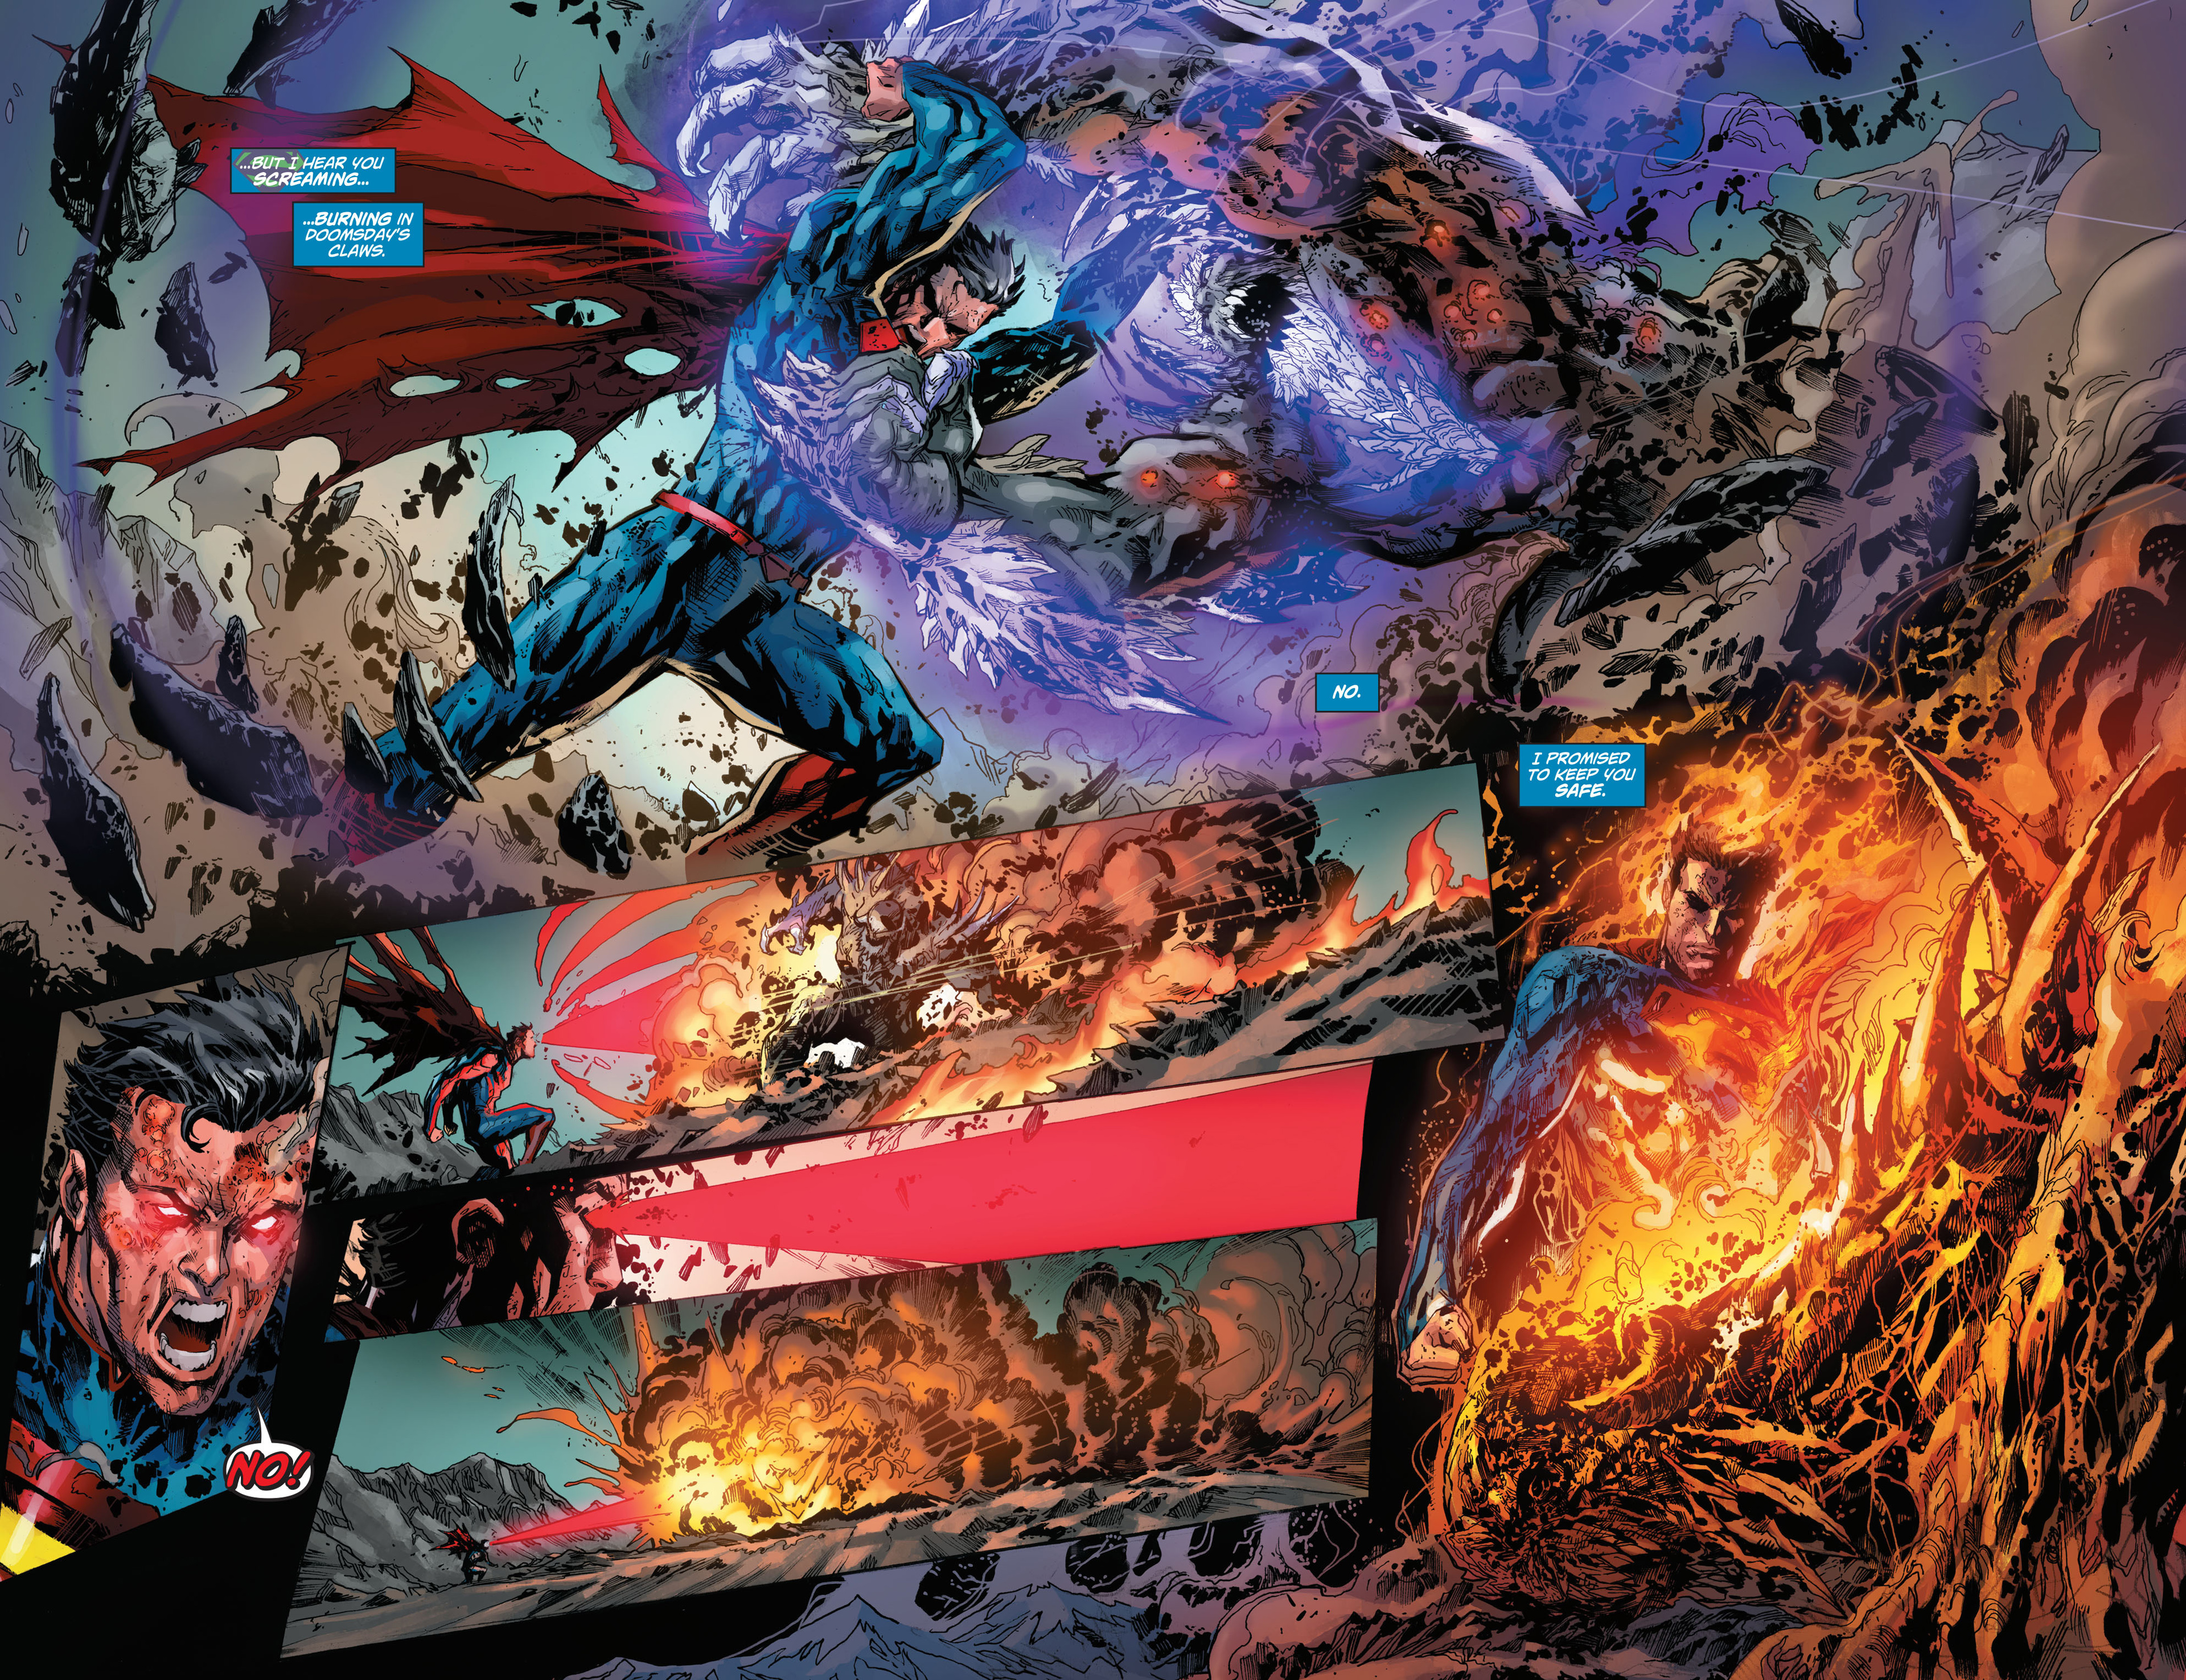 Superman vs doomsday comics torrent david de penitente mozart midi torrent